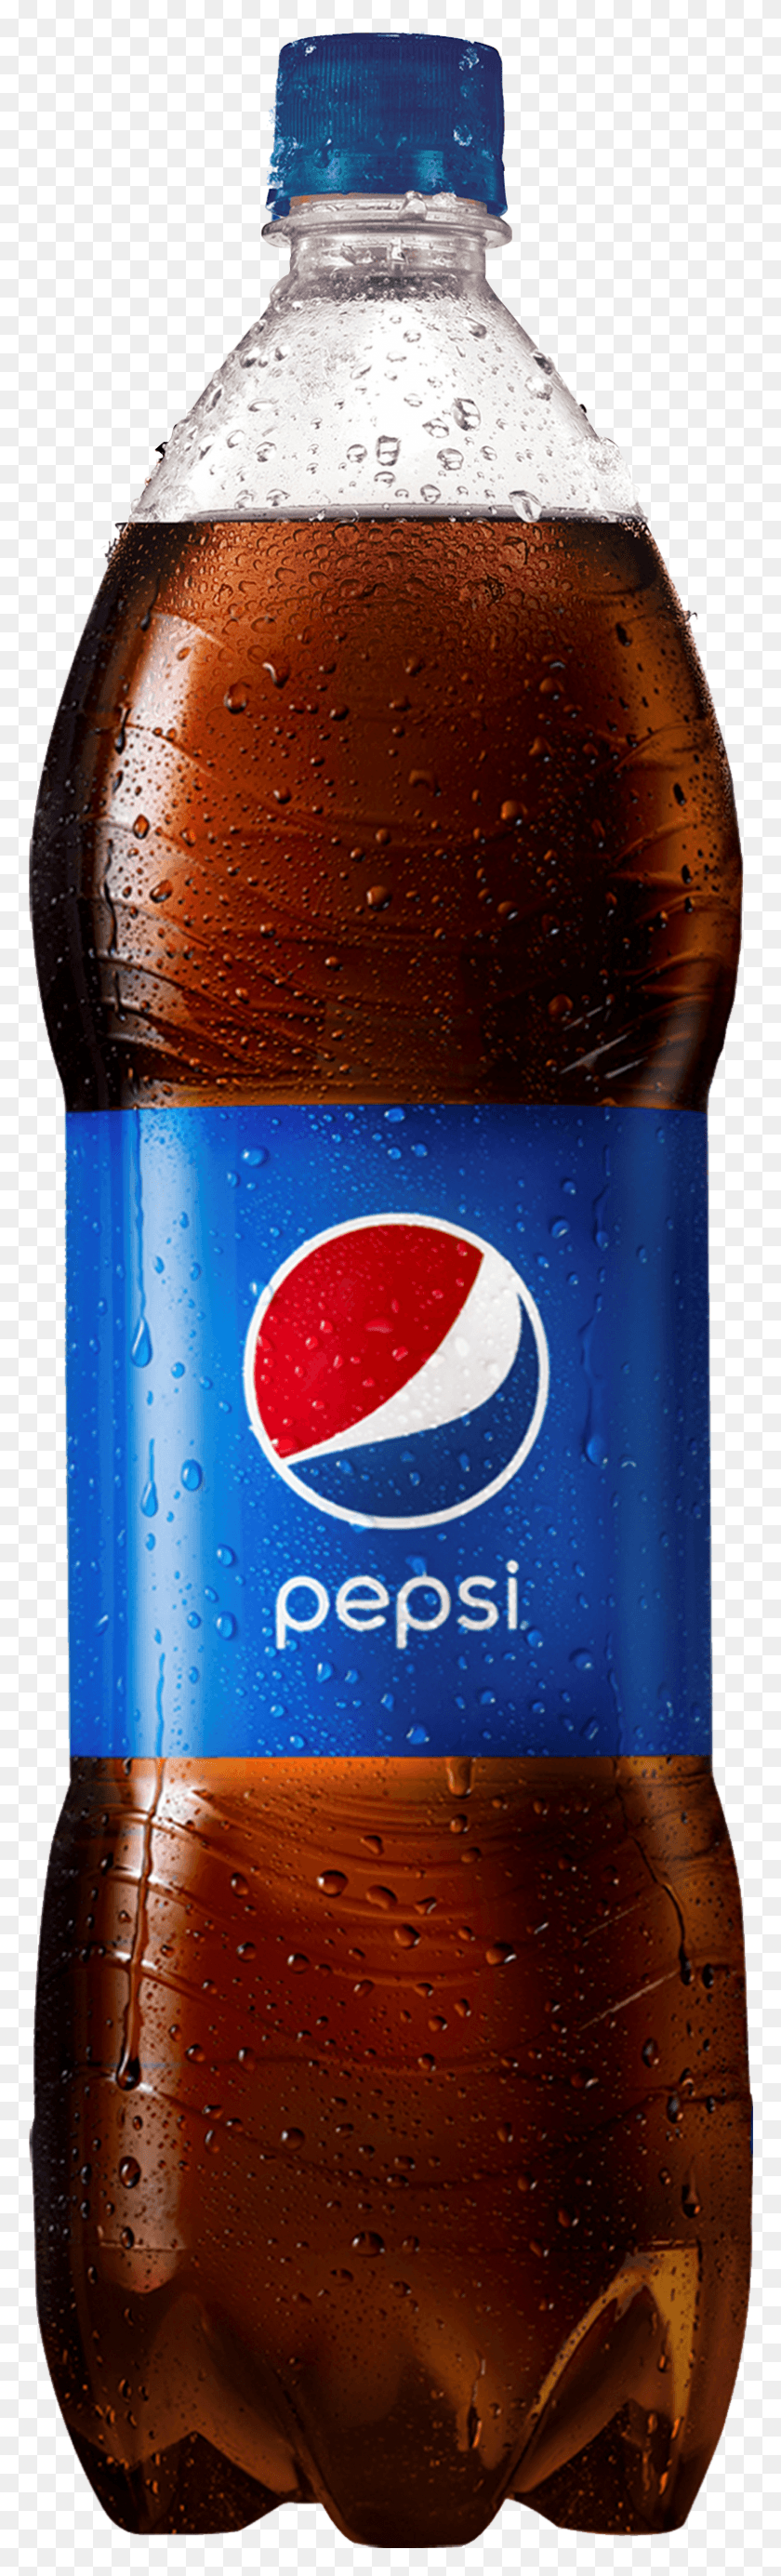 785x2728 Doble Litro De Pepsi, Содовая, Напитки, Напиток Hd Png Скачать